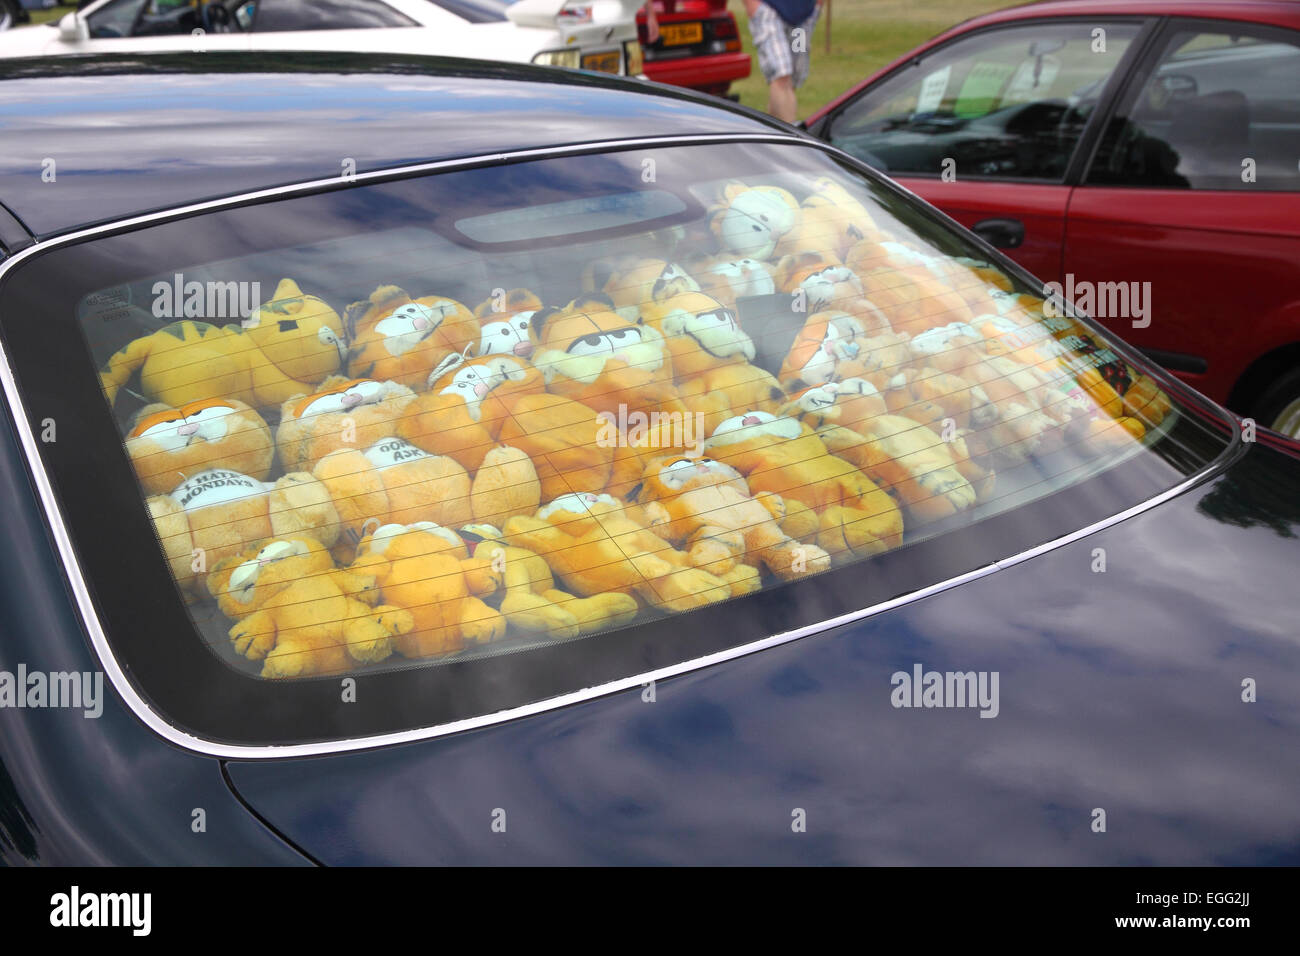 Viele Garfield-Plüschtiere in Heckscheibe des Autos Stockfotografie - Alamy